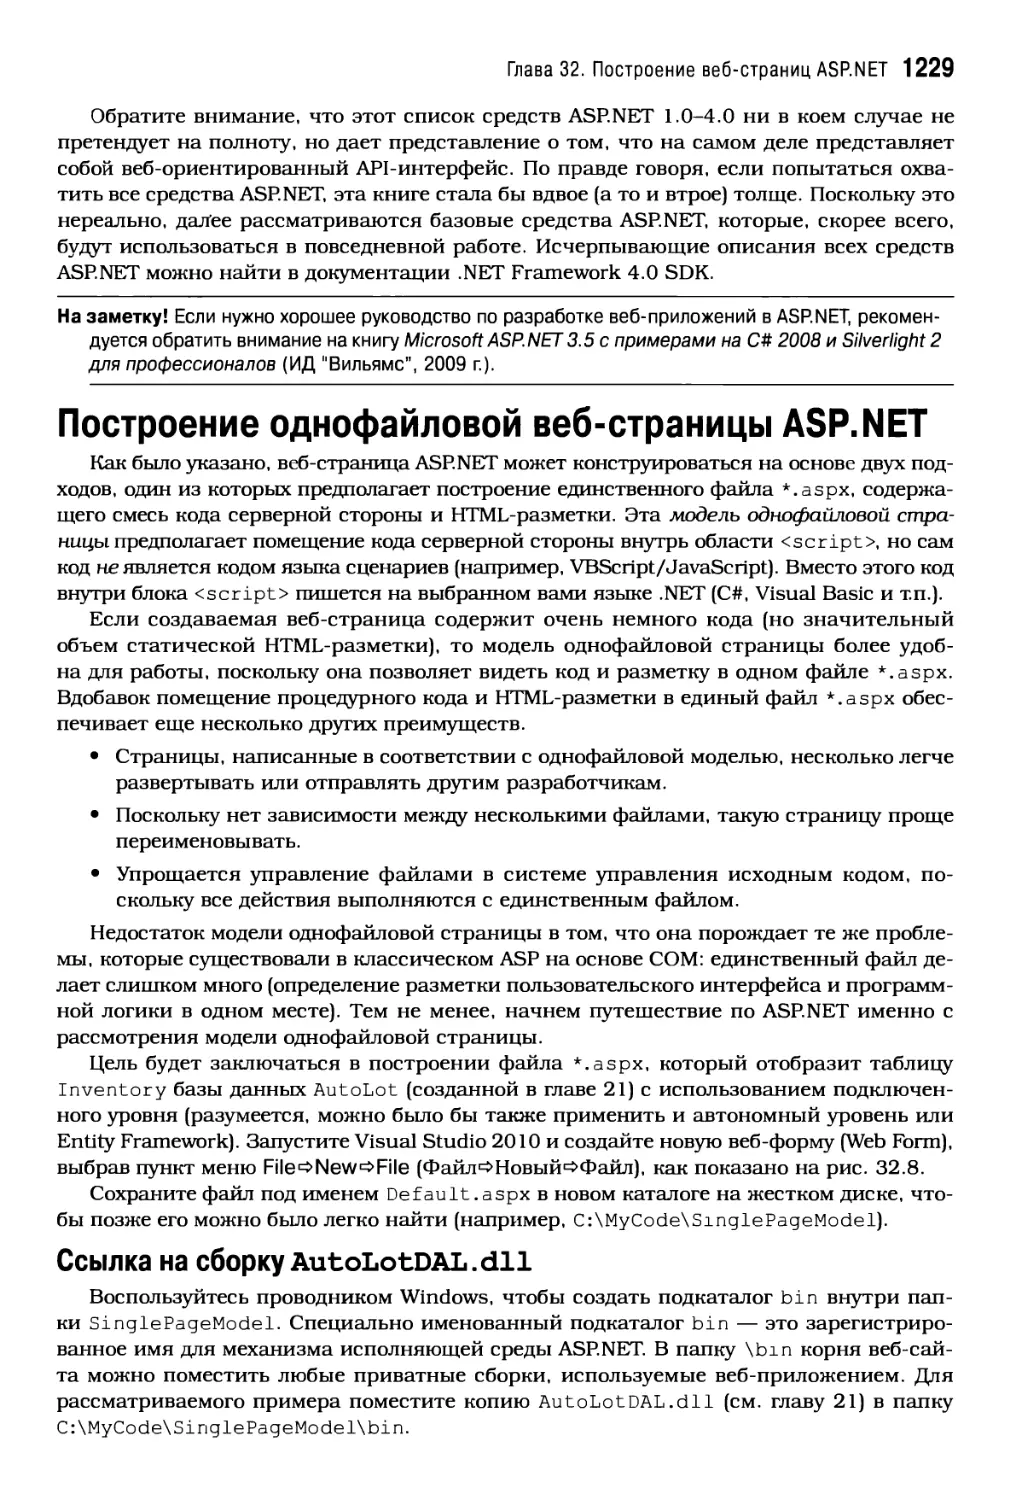 Построение однофайловой веб-страницы ASP.NET